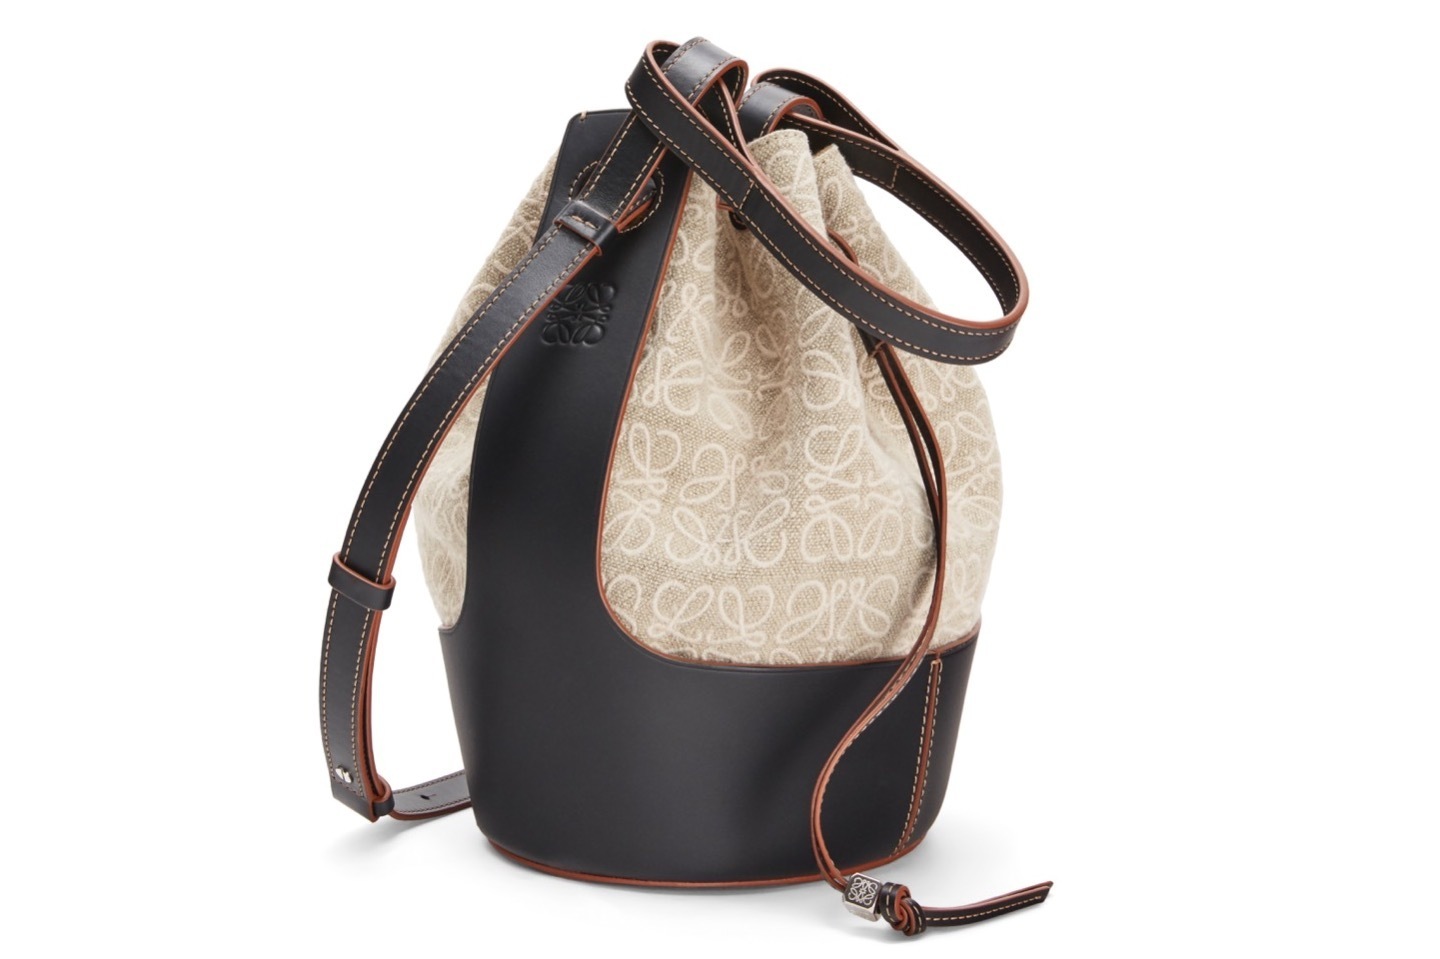 ロエベ“アナグラム・パターンの刺繍”を施した新作バッグ、風船フォルム